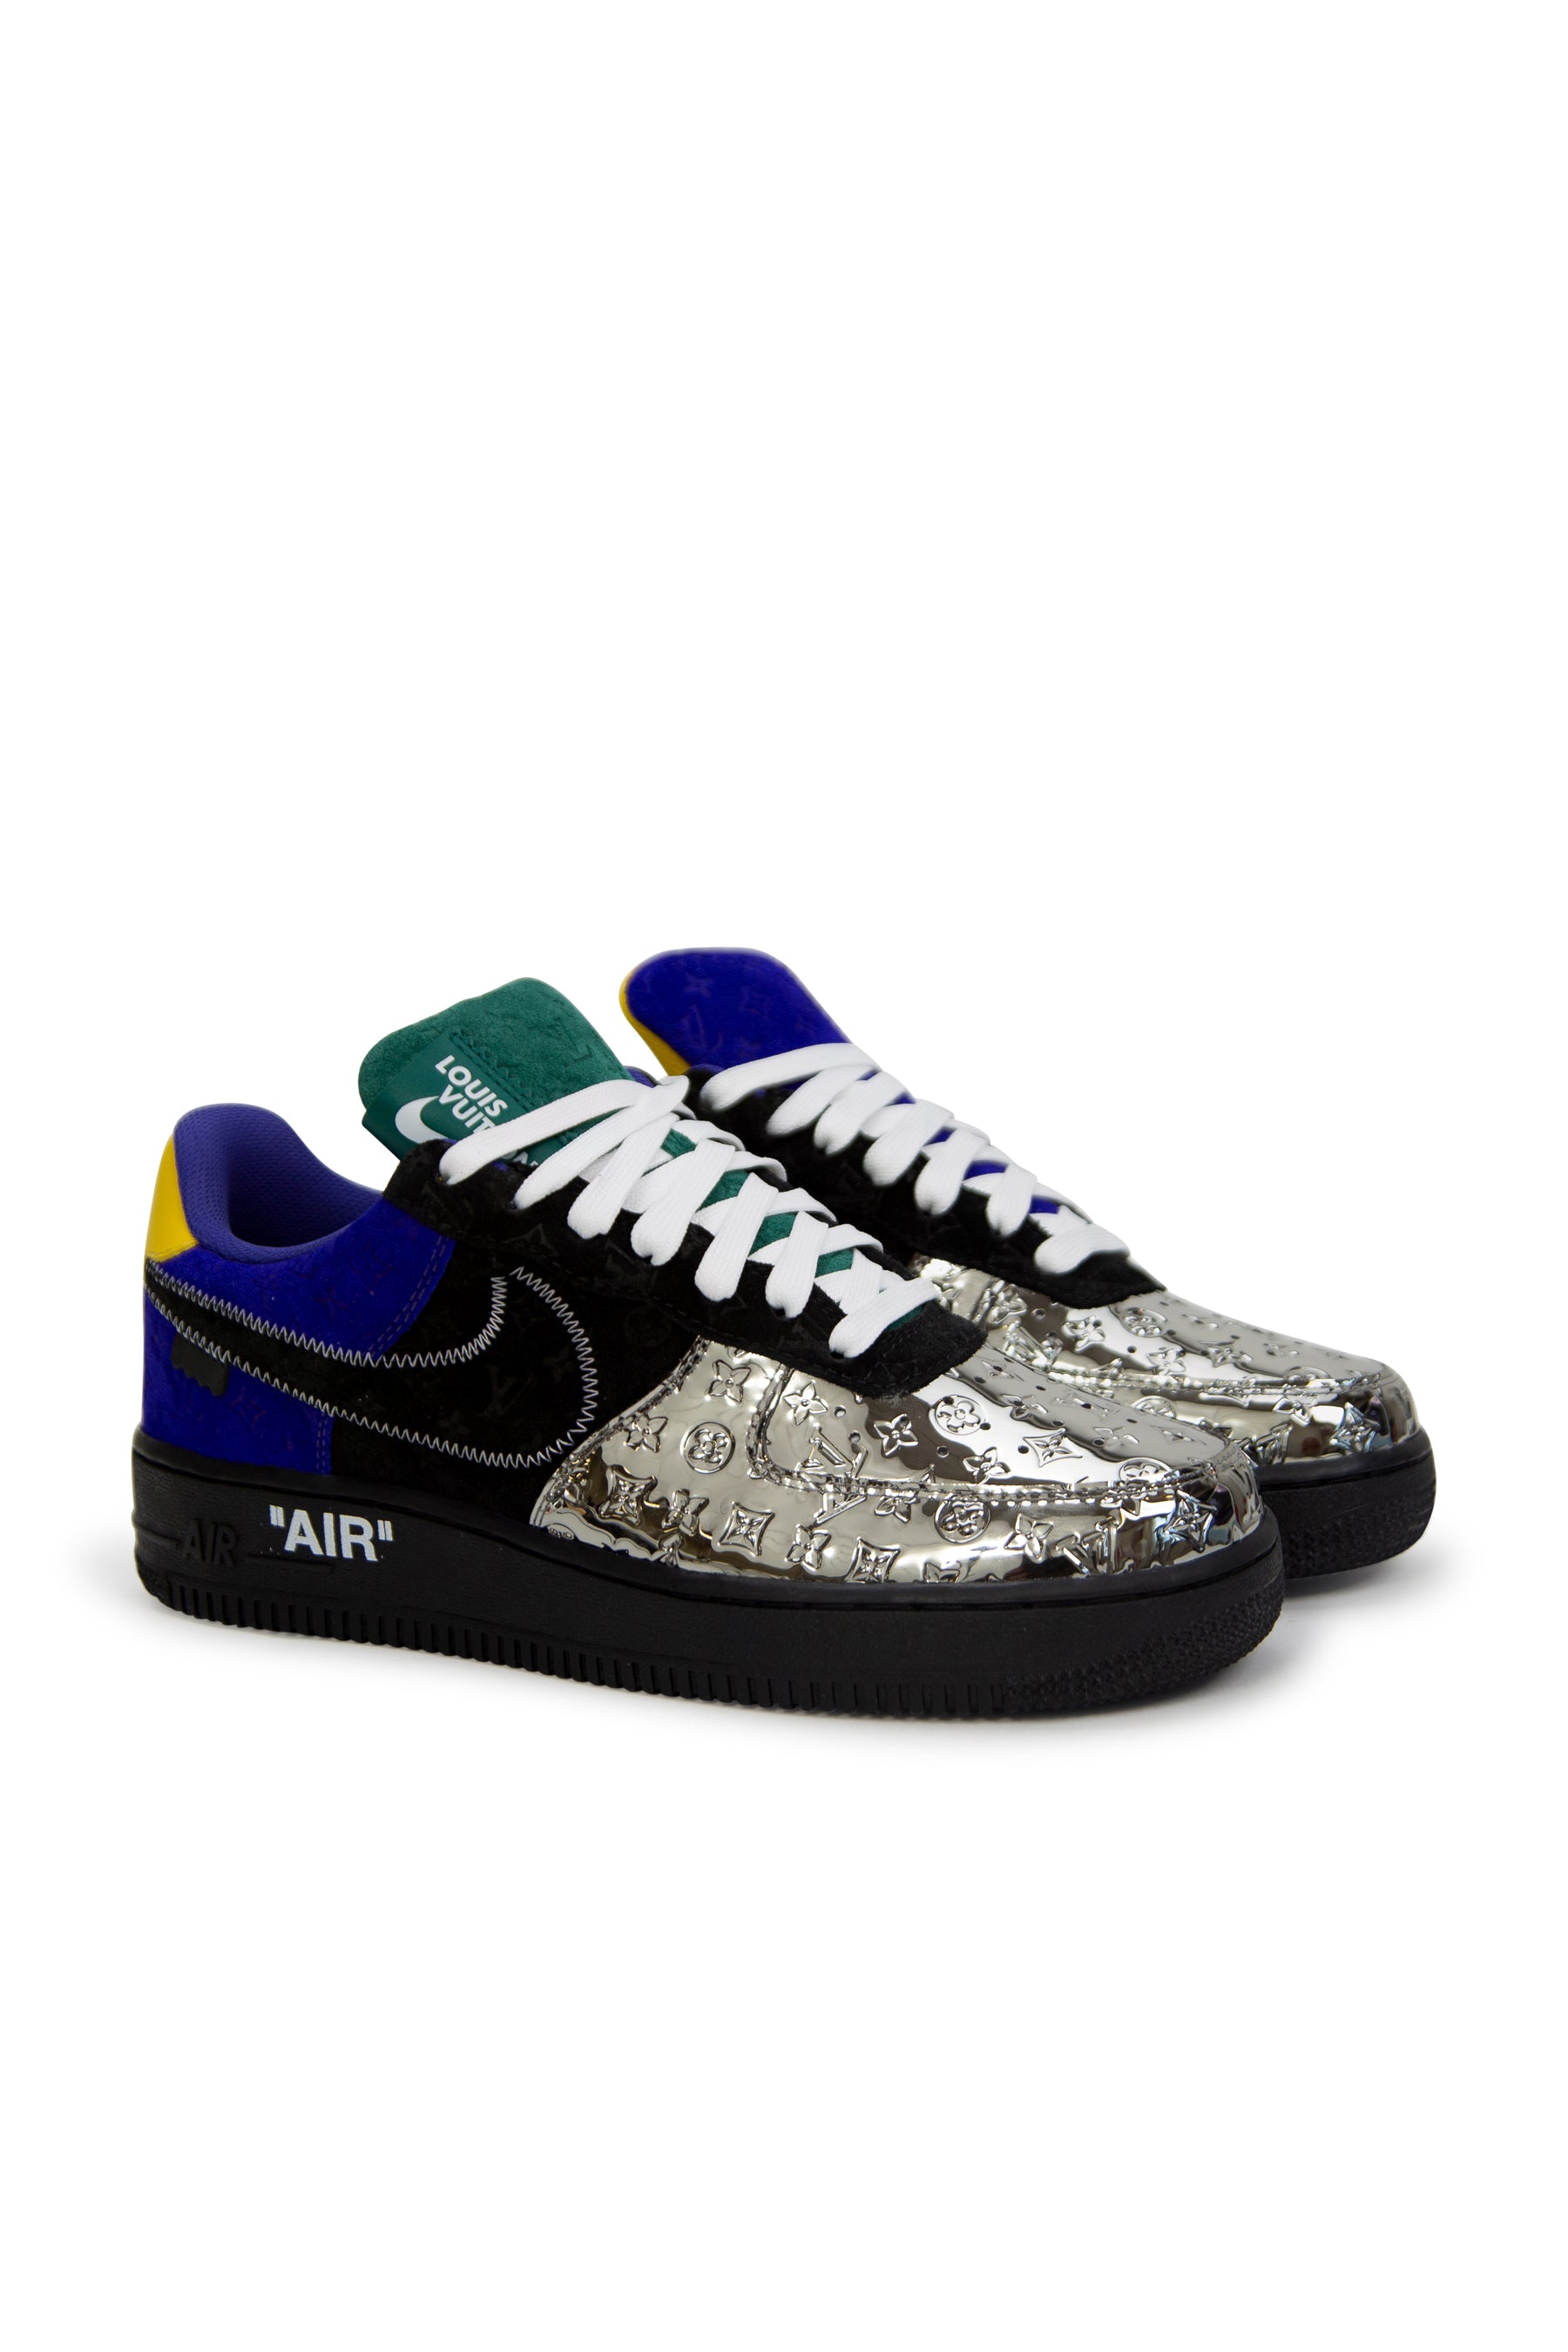 Louis Vuitton x Nike Air Force 1 Sneaker